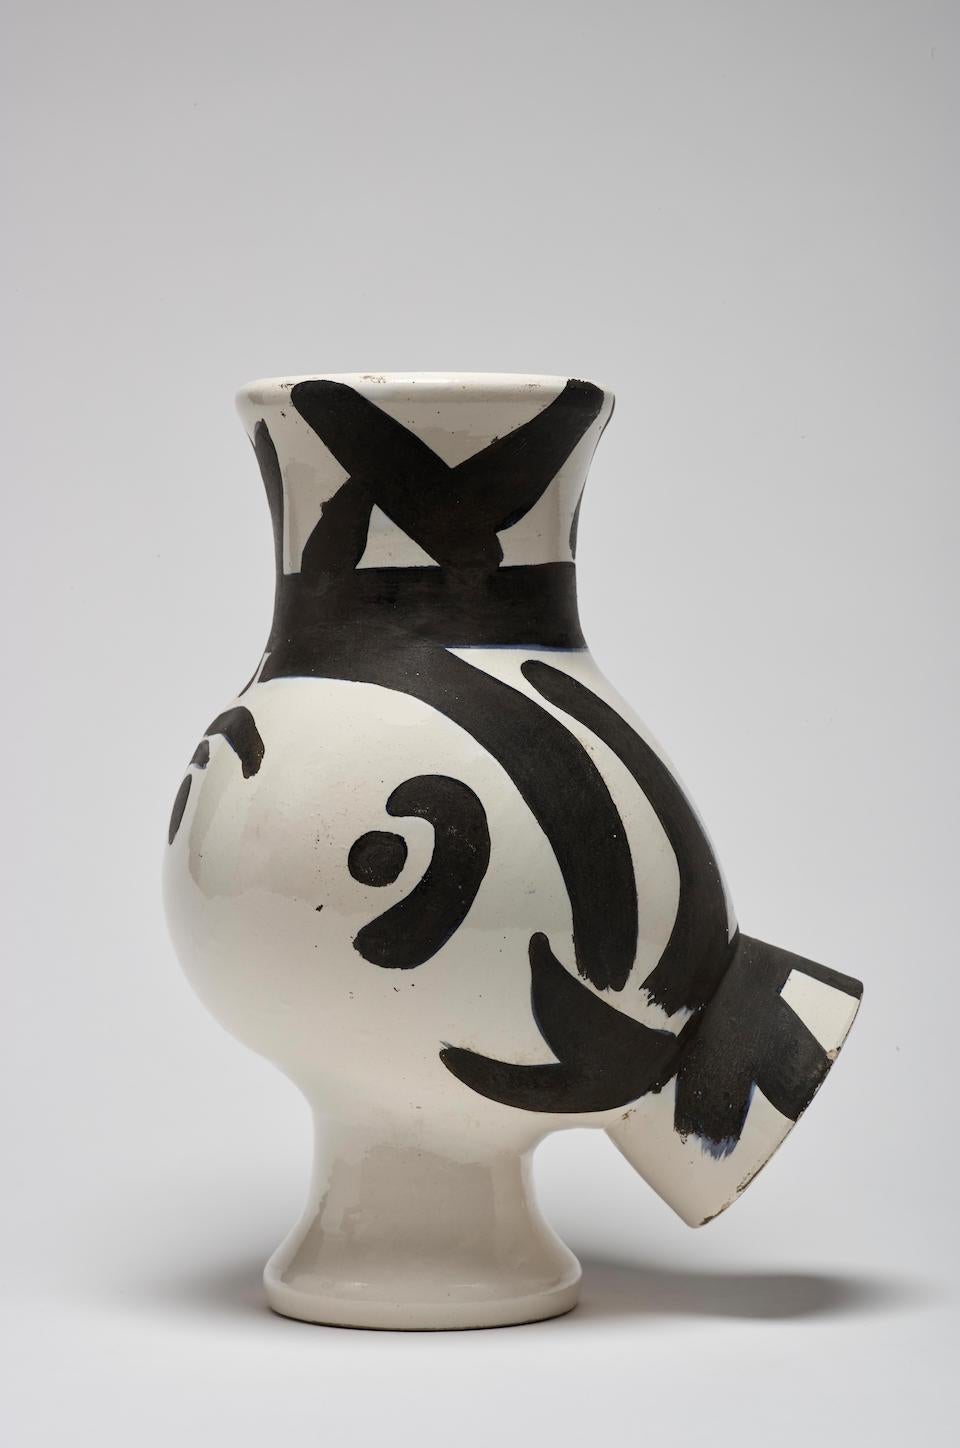 Chouette, Picasso, Pichet, Design, 1950, Céramique, Noir et blanc, Animal - Sculpture de Pablo Picasso